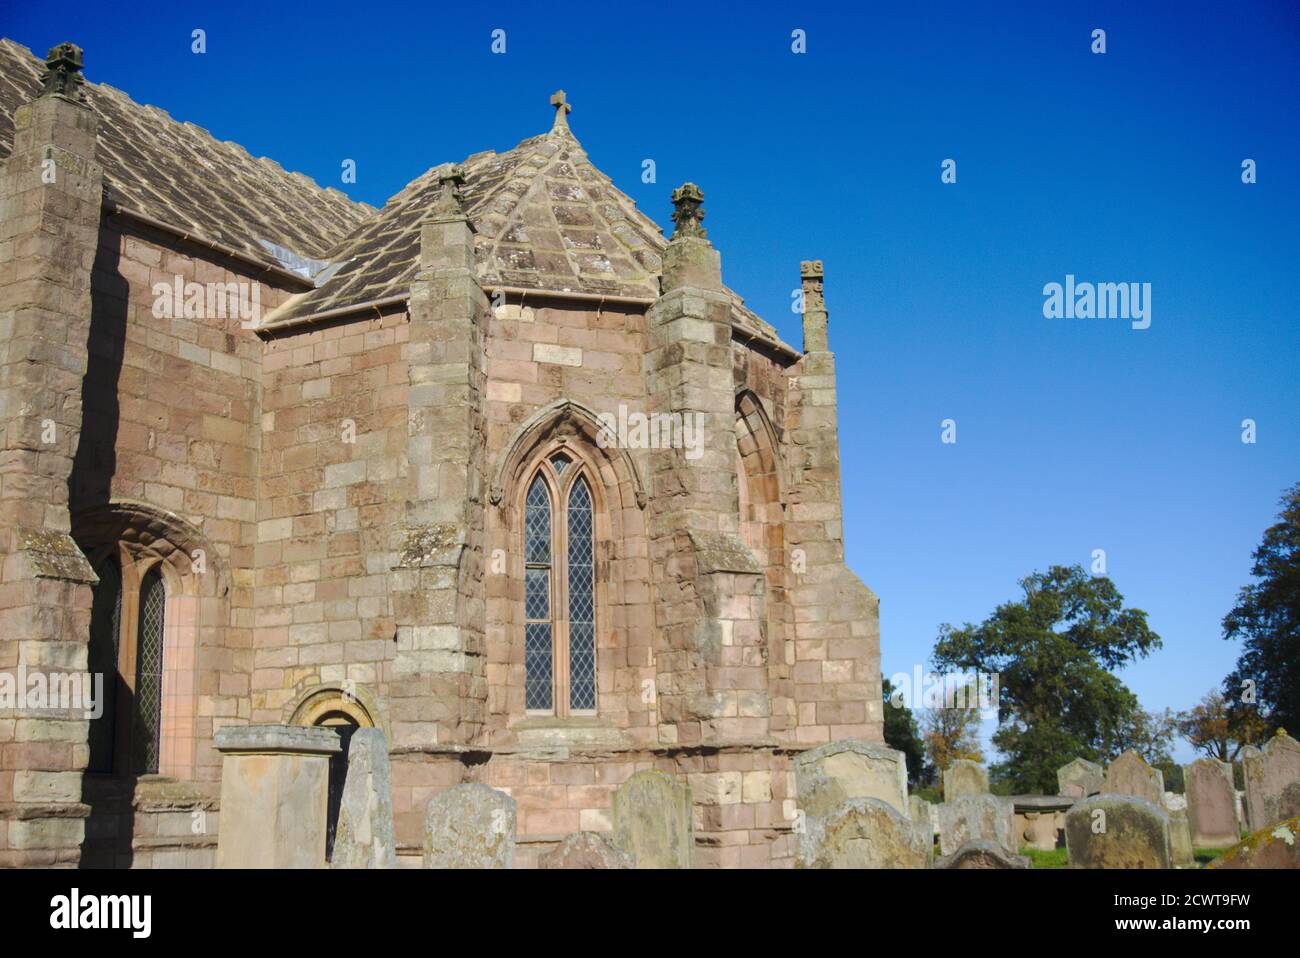 Église Ladykirk, construite sur ordre du roi James IV près de la rivière Tweed dans le Berwickshire, frontières écossaises, Royaume-Uni. Fait maintenant partie de l'Écomusée de Flodden 1513. Banque D'Images